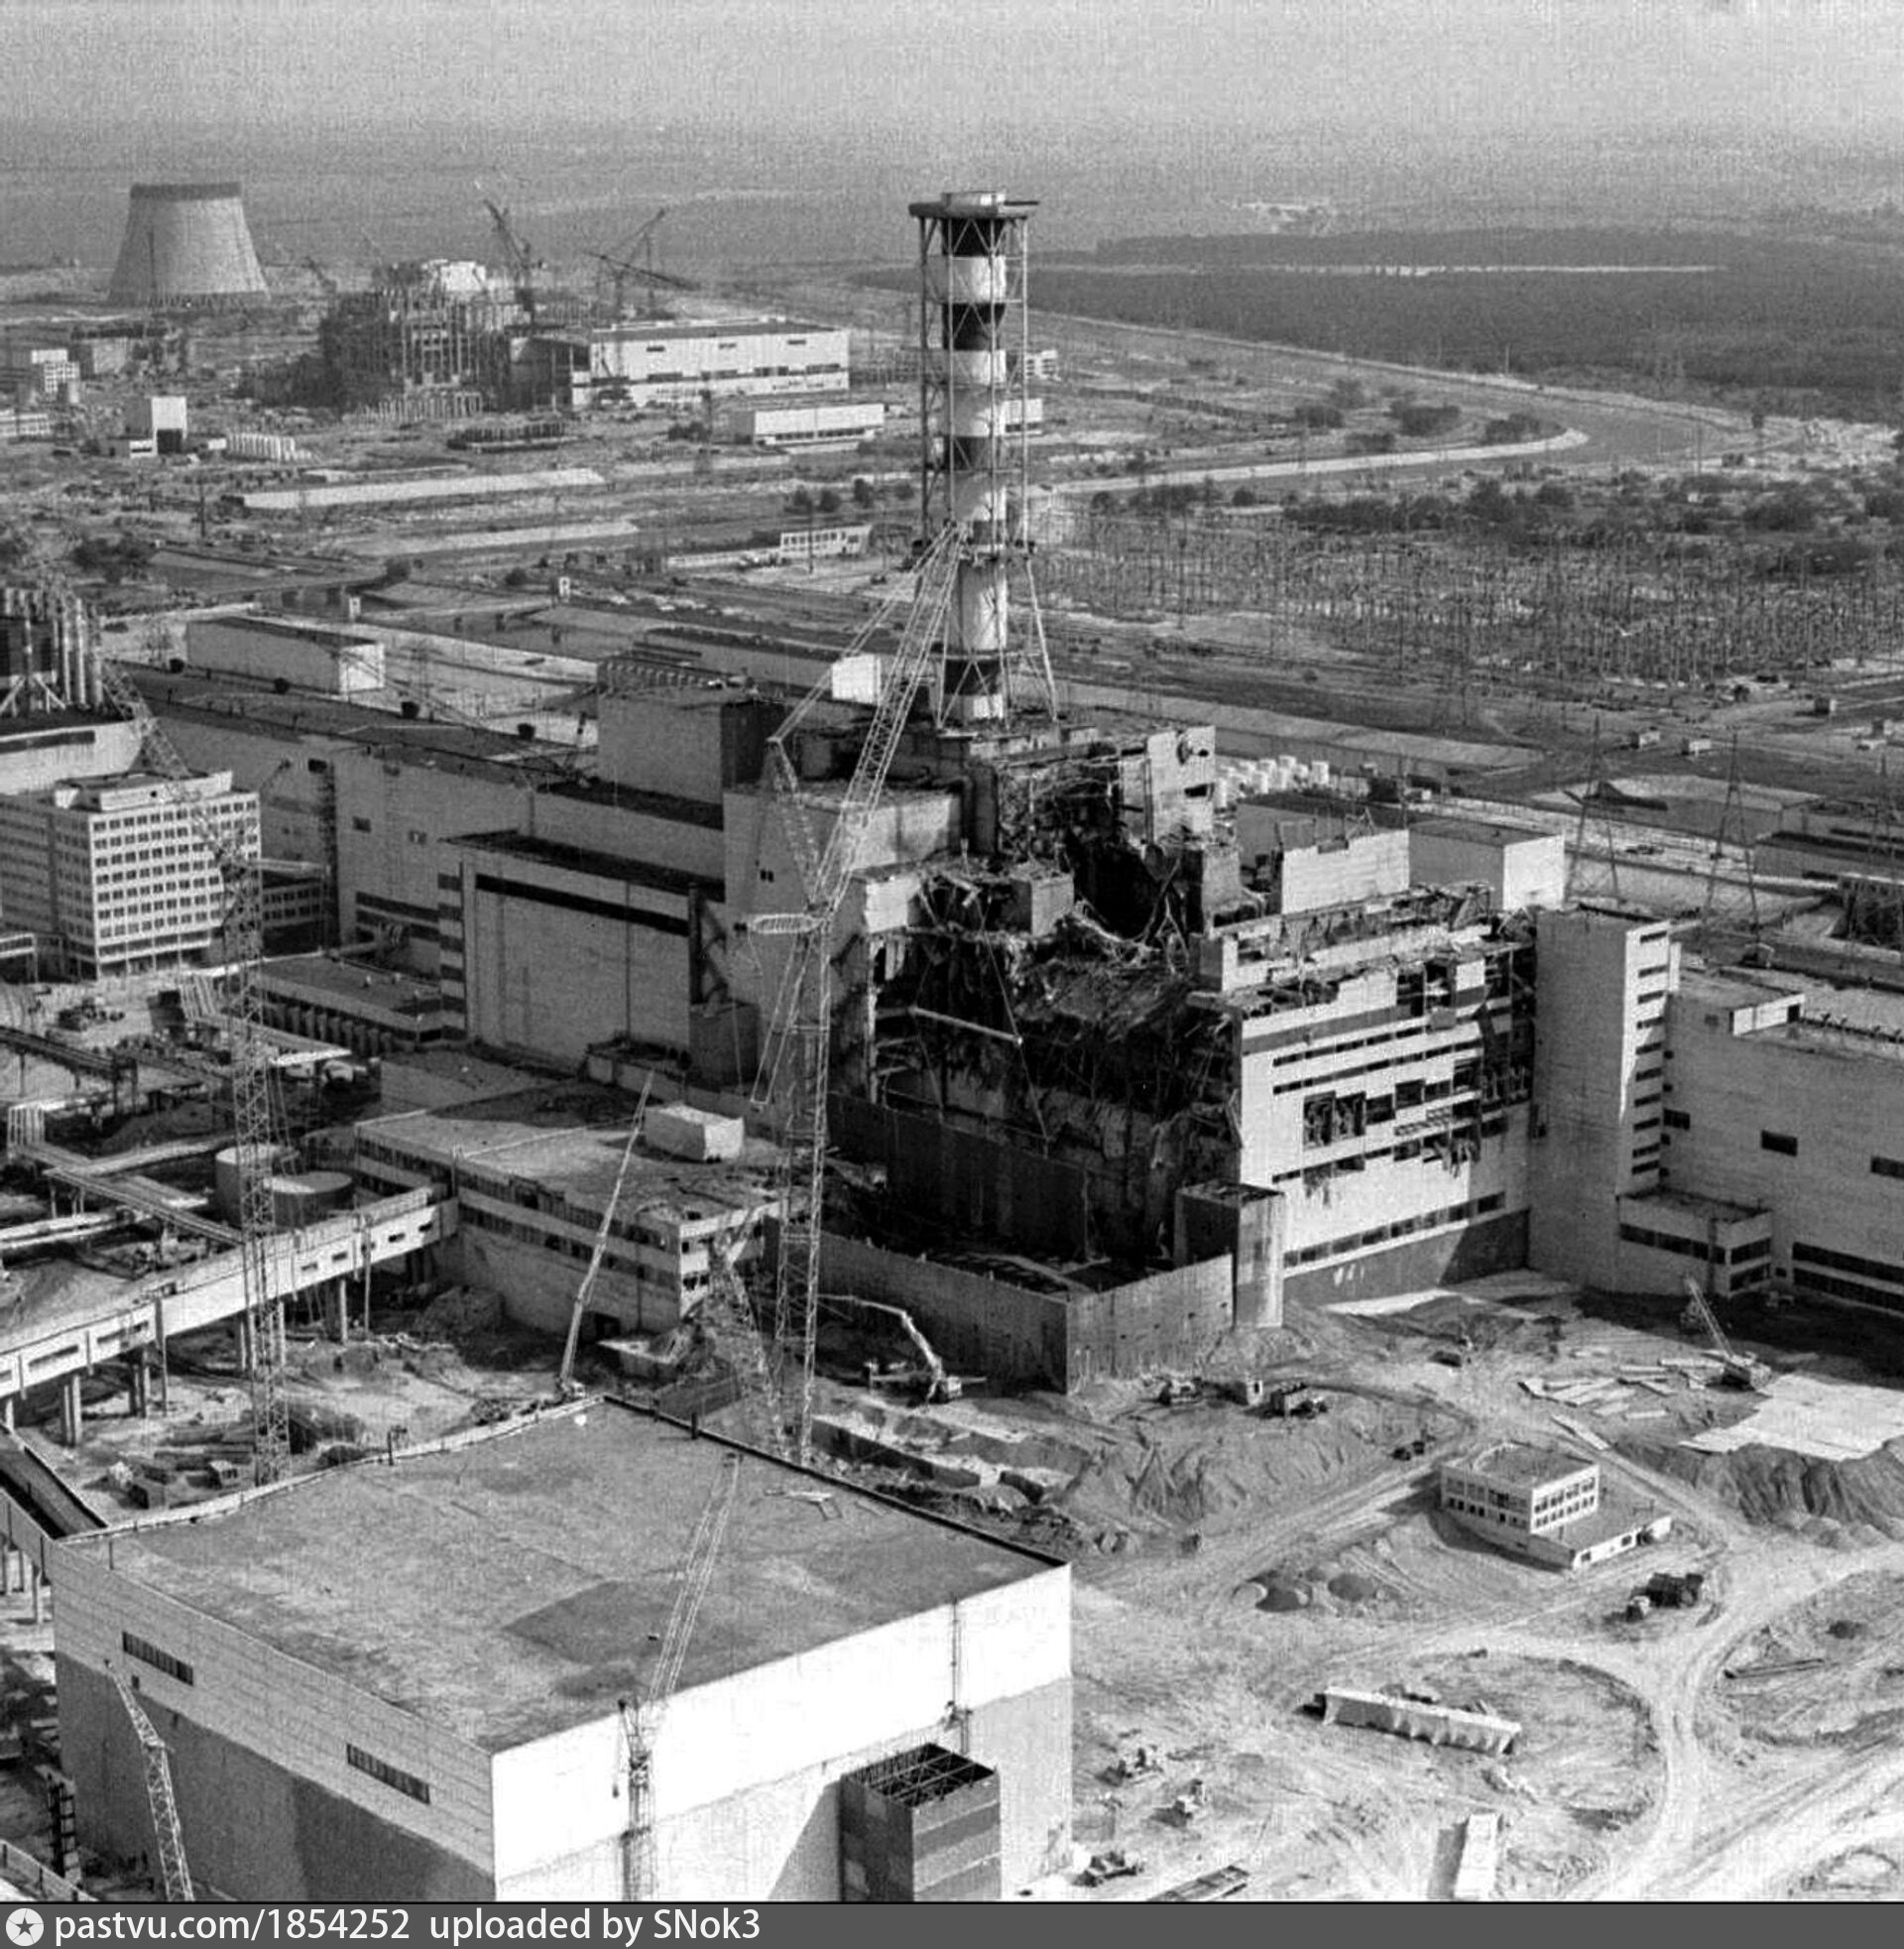 Чернобыльская аэс атомная электростанция. Чернобыльская АЭС 1986. Авария на Чернобыльской АЭС В 1986 году. Авария на Чернобыльской АЭС 26 апреля 1986 года. 4 Энергоблок ЧАЭС 1986.